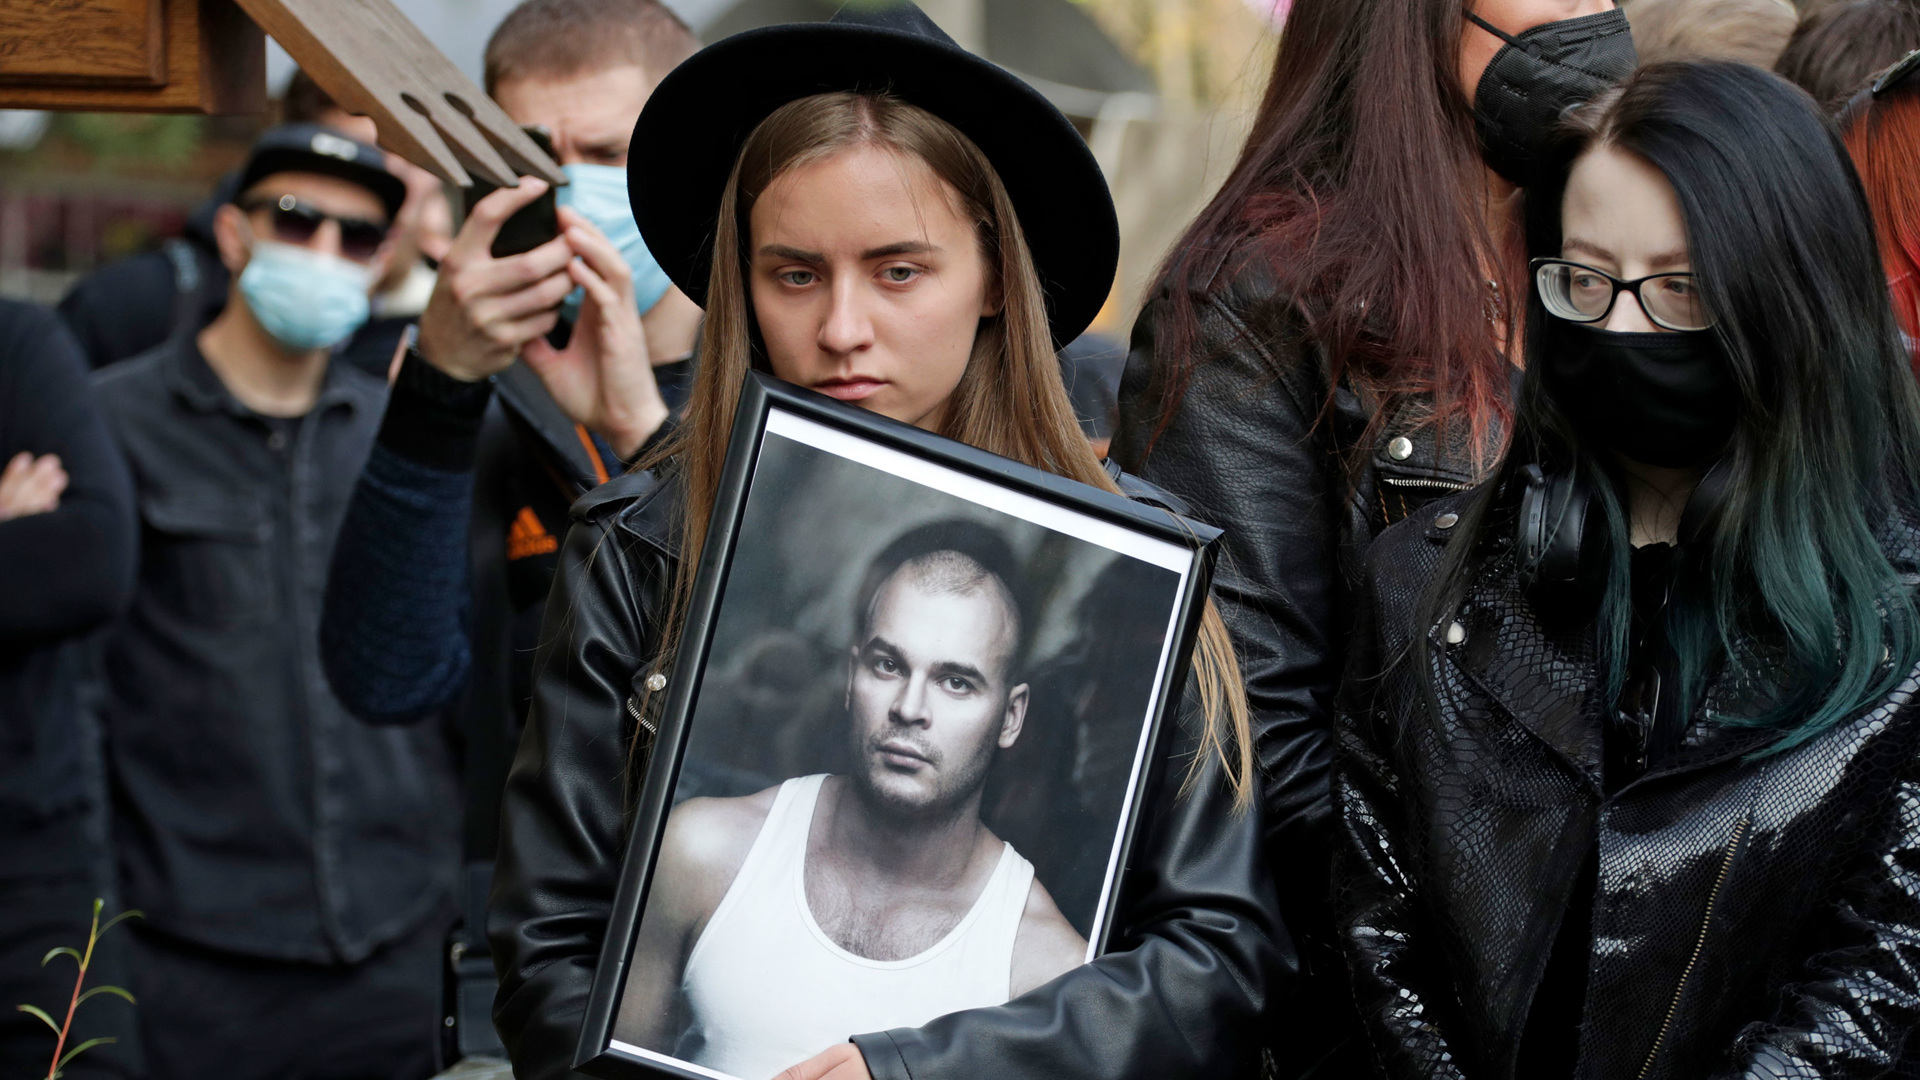 Жена навального не пришла на похороны